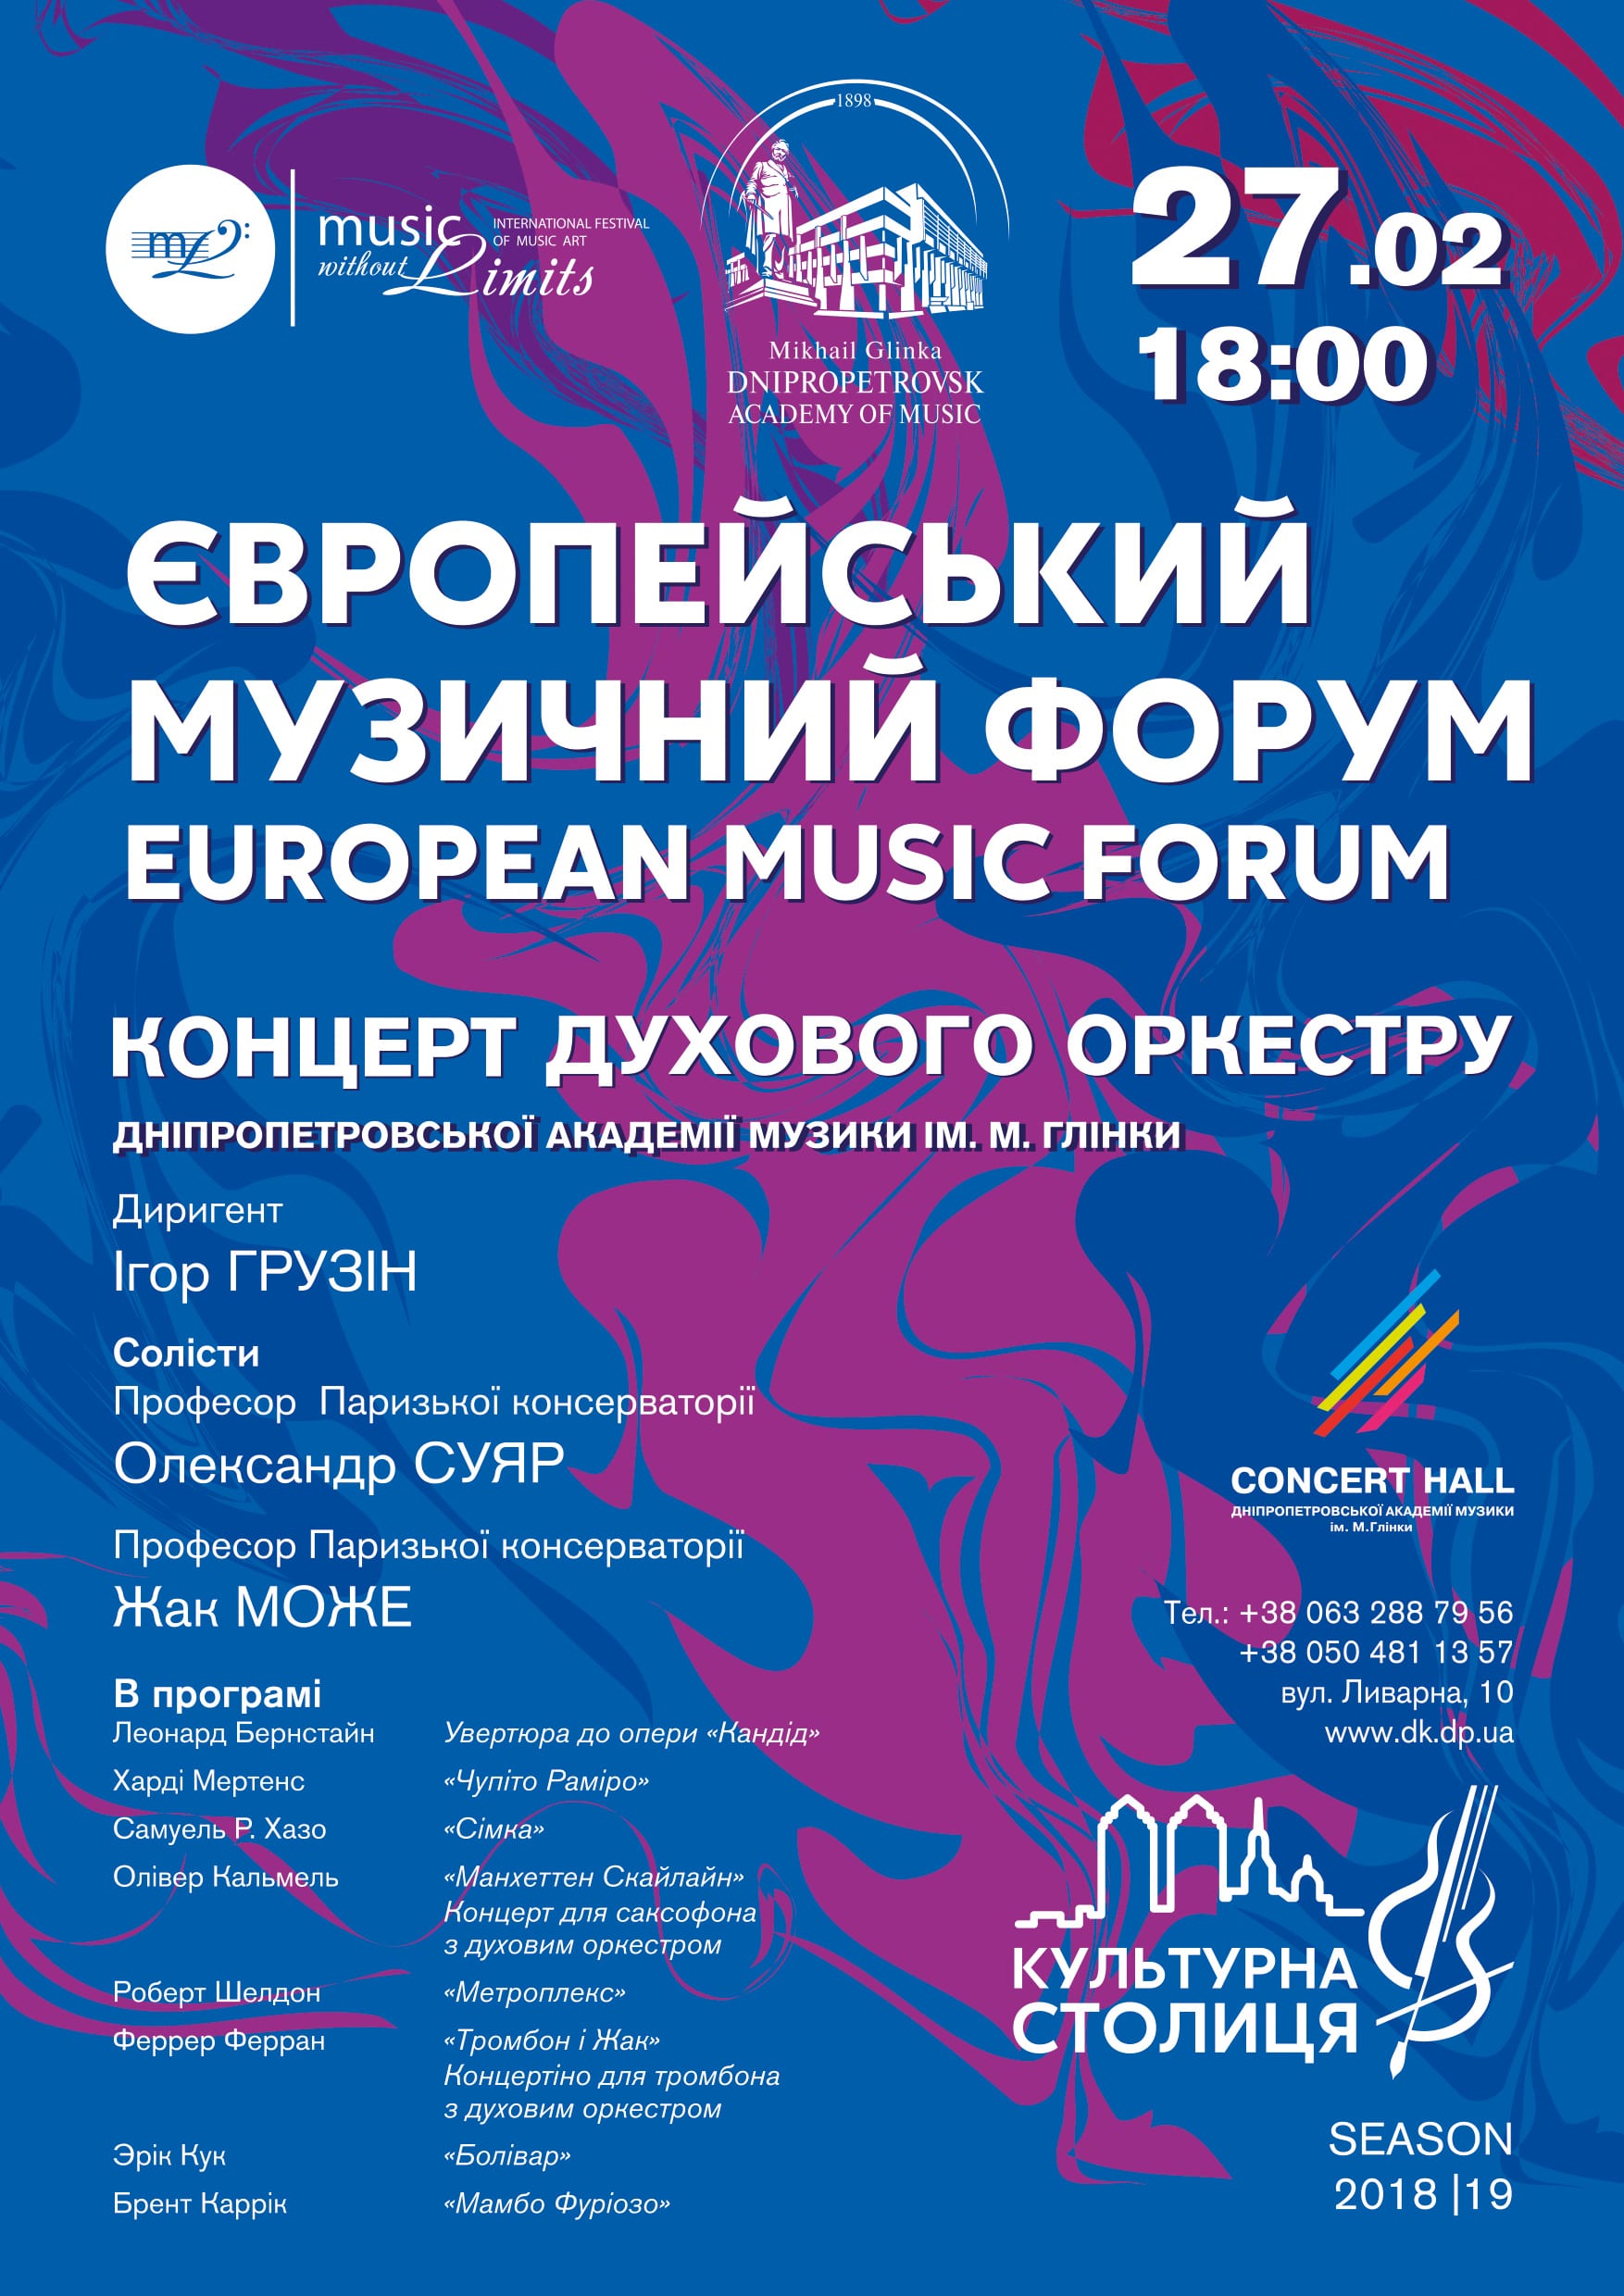 Європейський музичний форум Днепр, цена, фото, даты, расписание